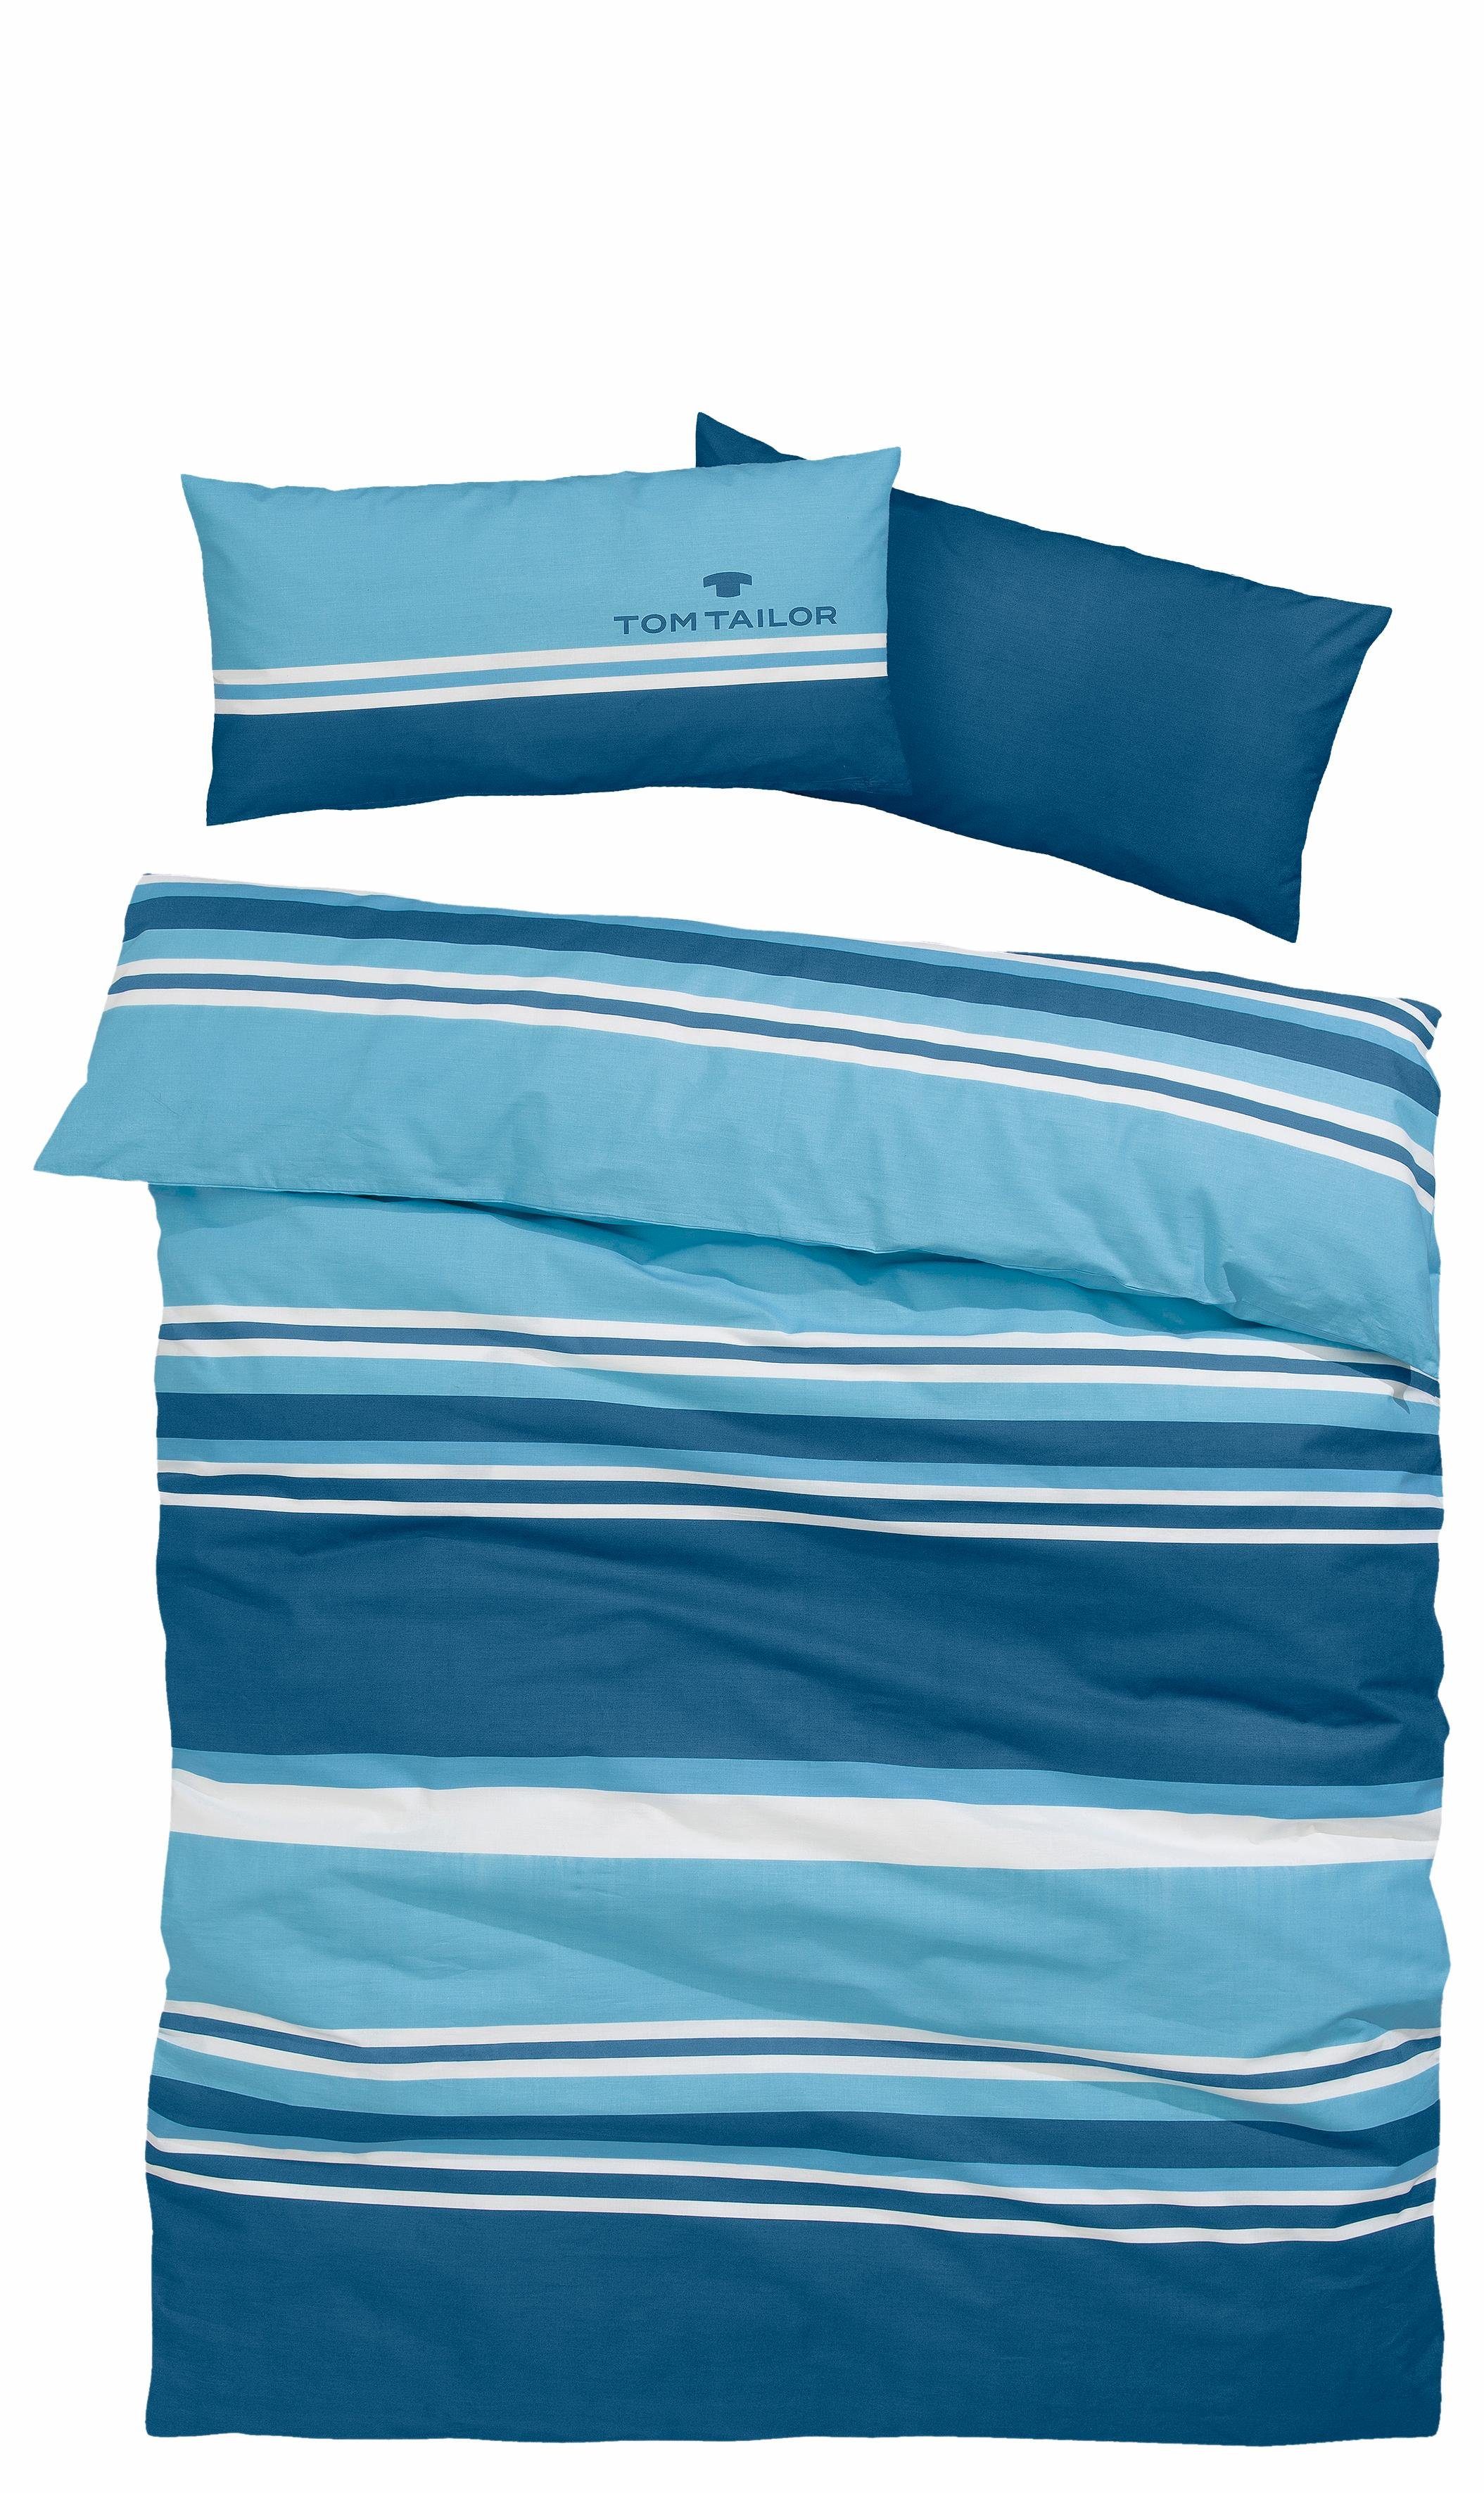 Bettwäsche Jun in Gr. 135x200 oder 155x220 cm, TOM TAILOR, Renforcé,  gestreifte Bettwäsche aus Baumwolle, Bettwäsche mit Reißverschluss